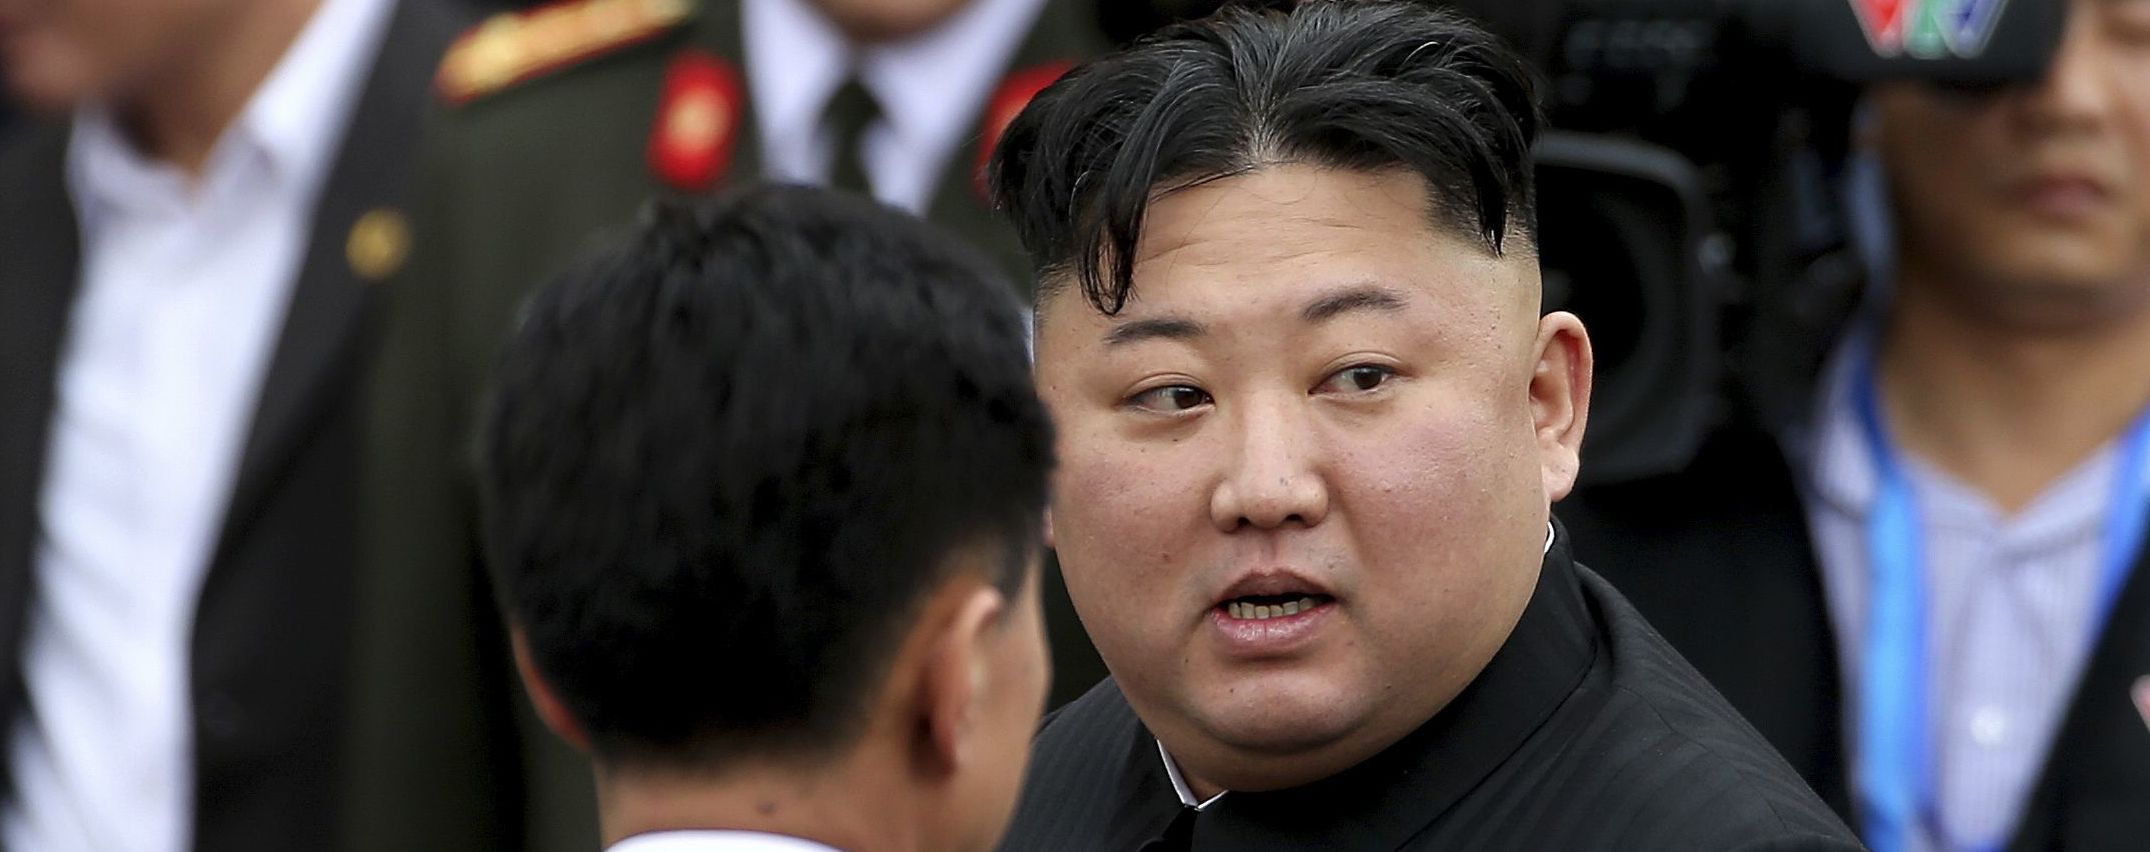 Ким Чен Ын неожиданно извинился за убийство чиновника Южной Кореи